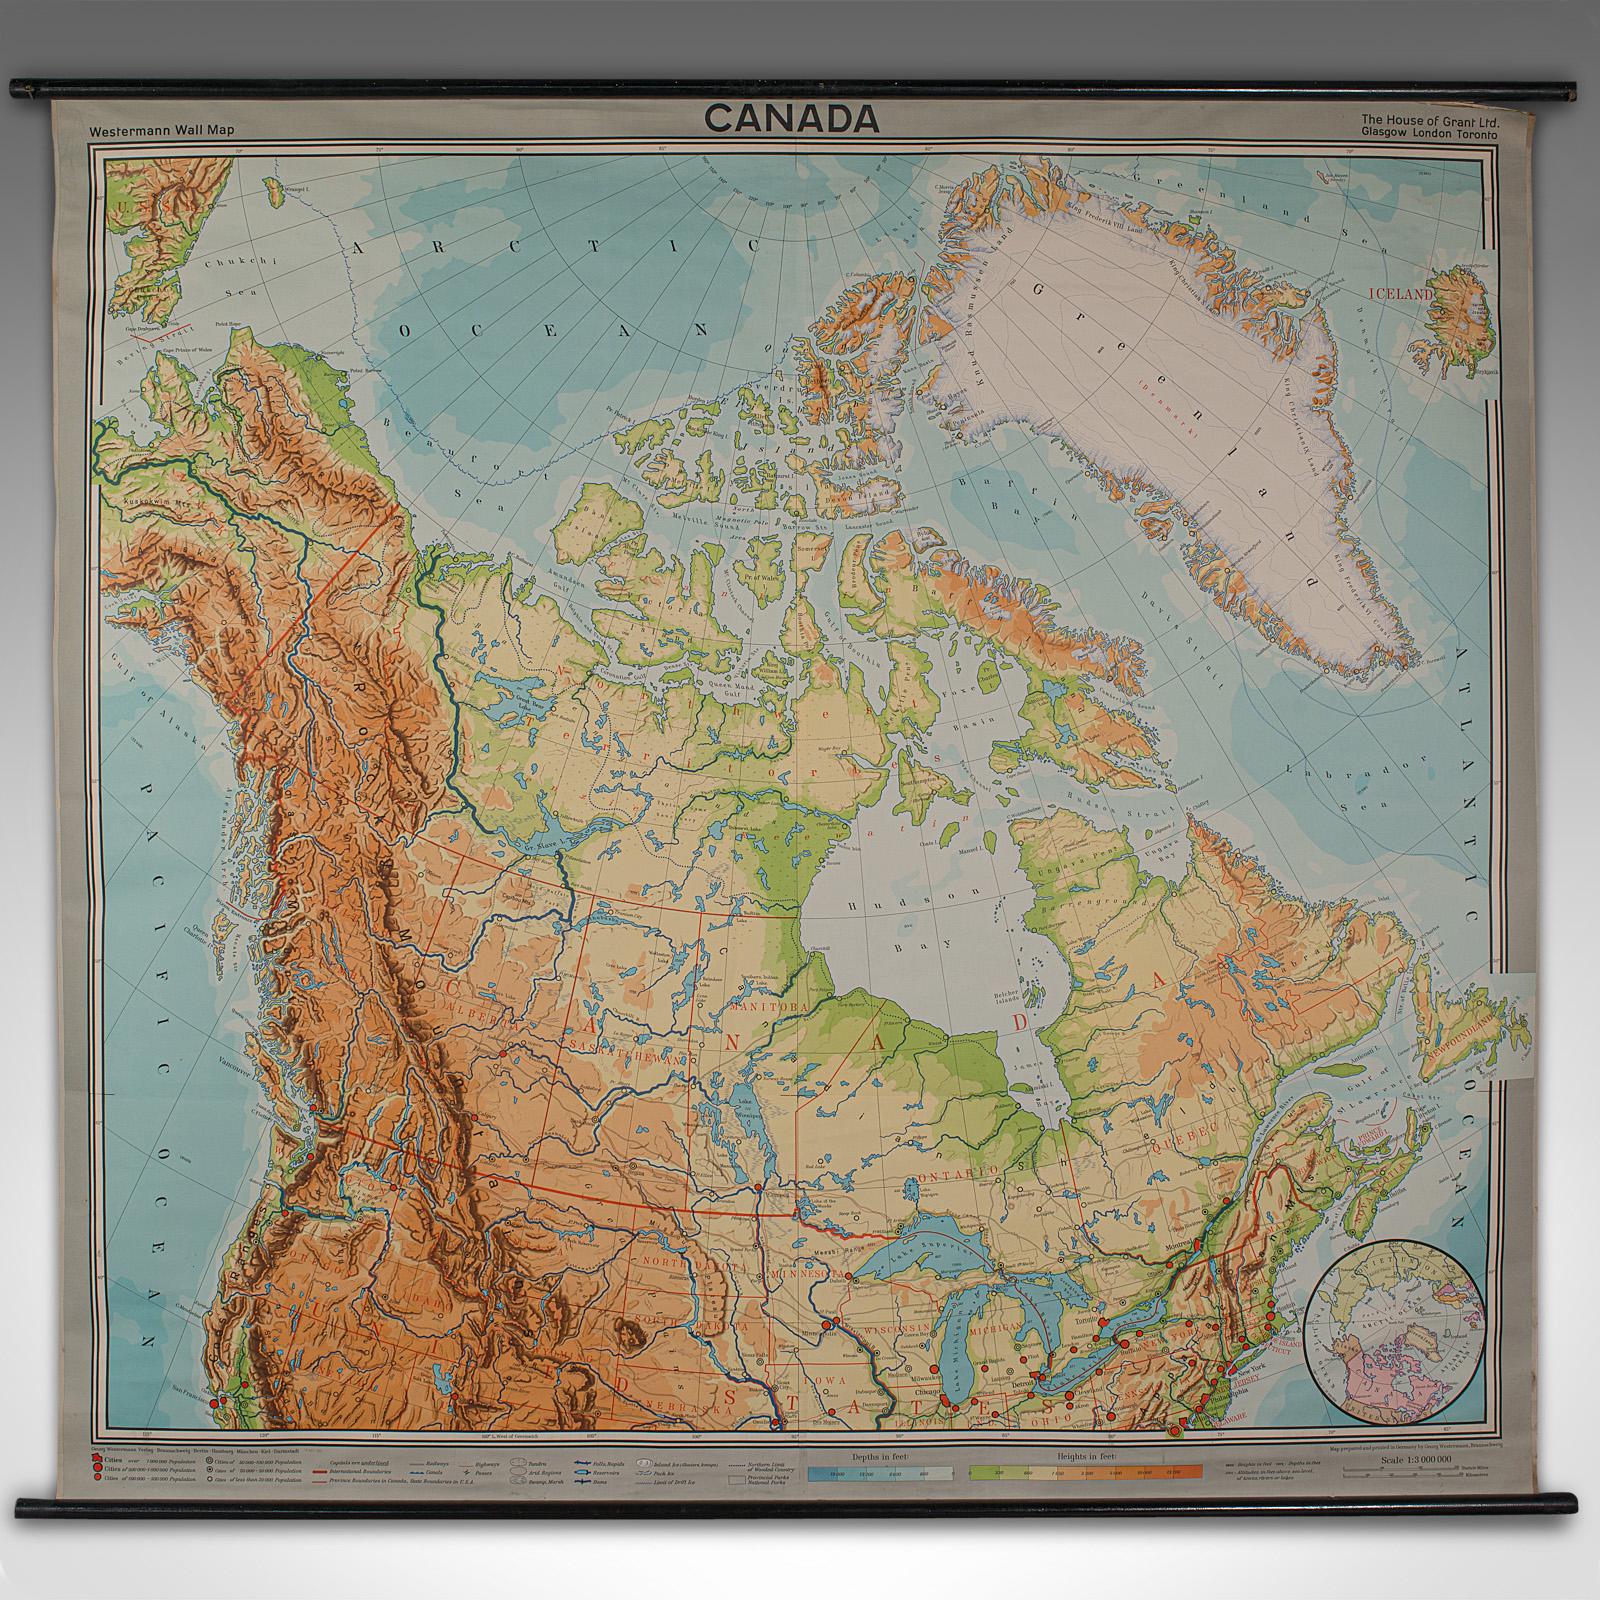 Dies ist eine sehr große Vintage-Karte von Kanada. Eine deutsche, hochwertig gedruckte Schul- oder Institutionskarte, aus der Mitte des 20. Jahrhunderts, um 1965.

Auffallende Proportionen mit viel Liebe zum Detail
Zeigt eine wünschenswerte